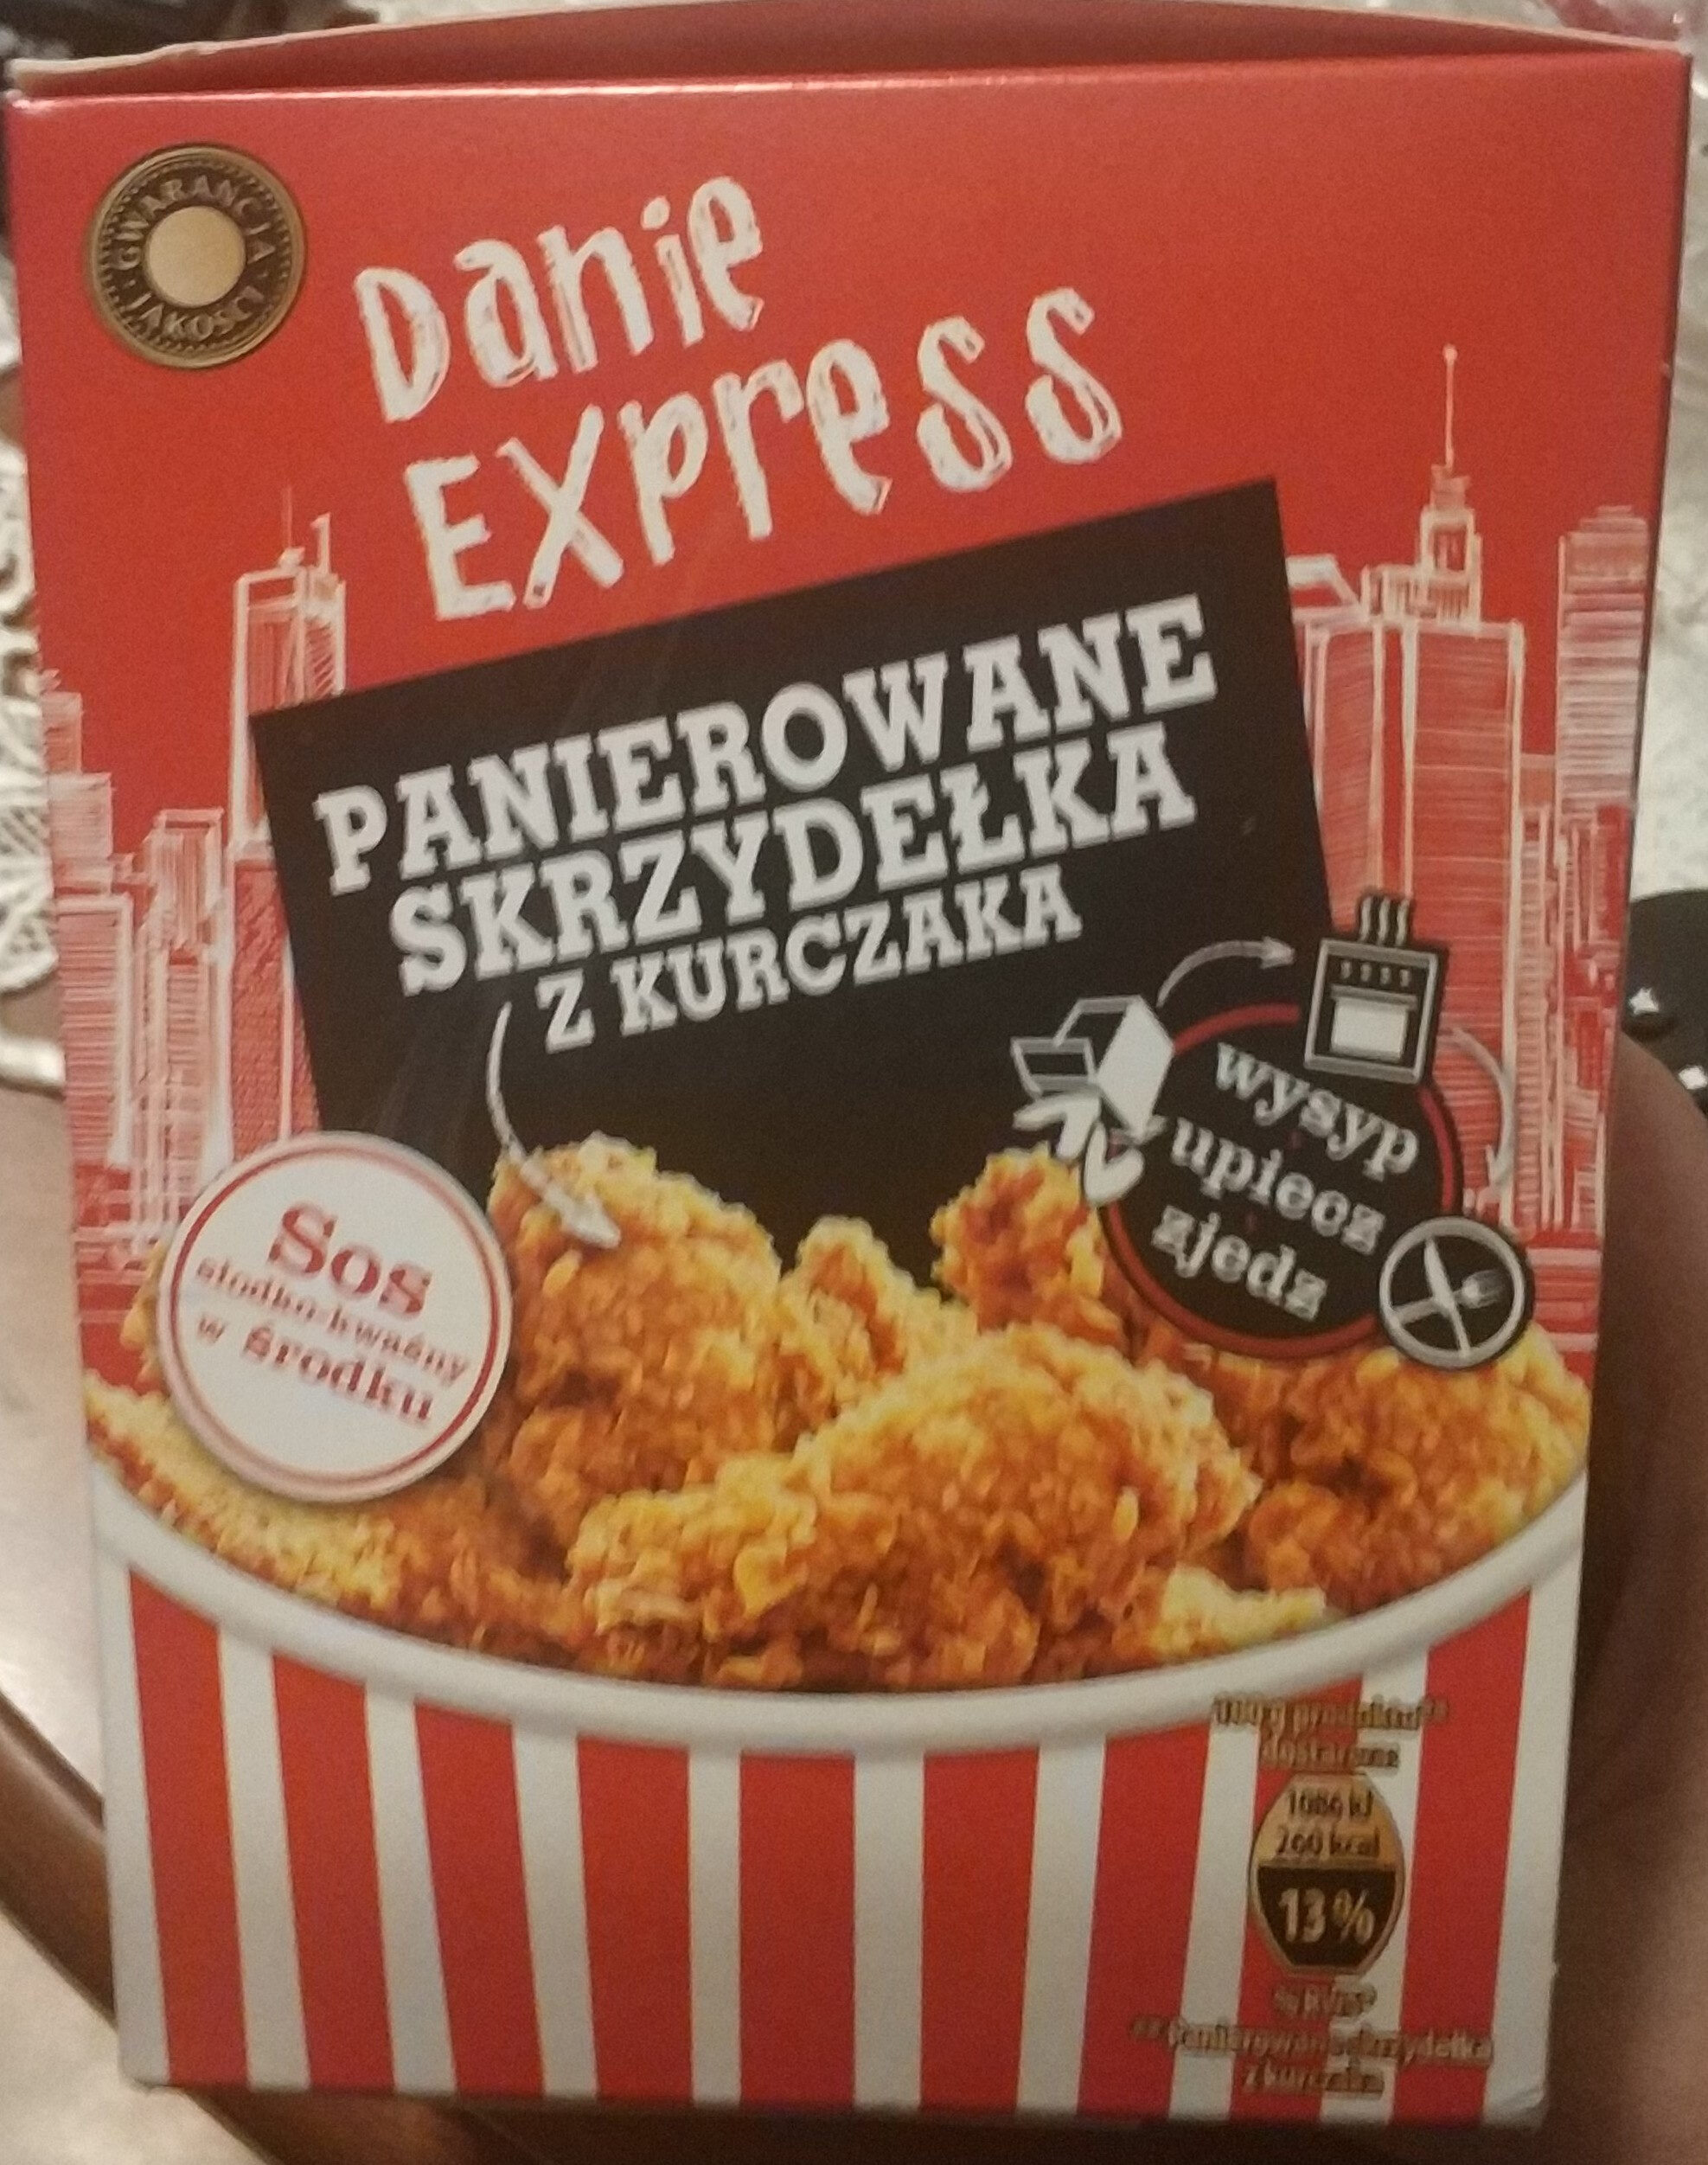 Danie express Panierowane skrzydełka z kurczaka - Produkt